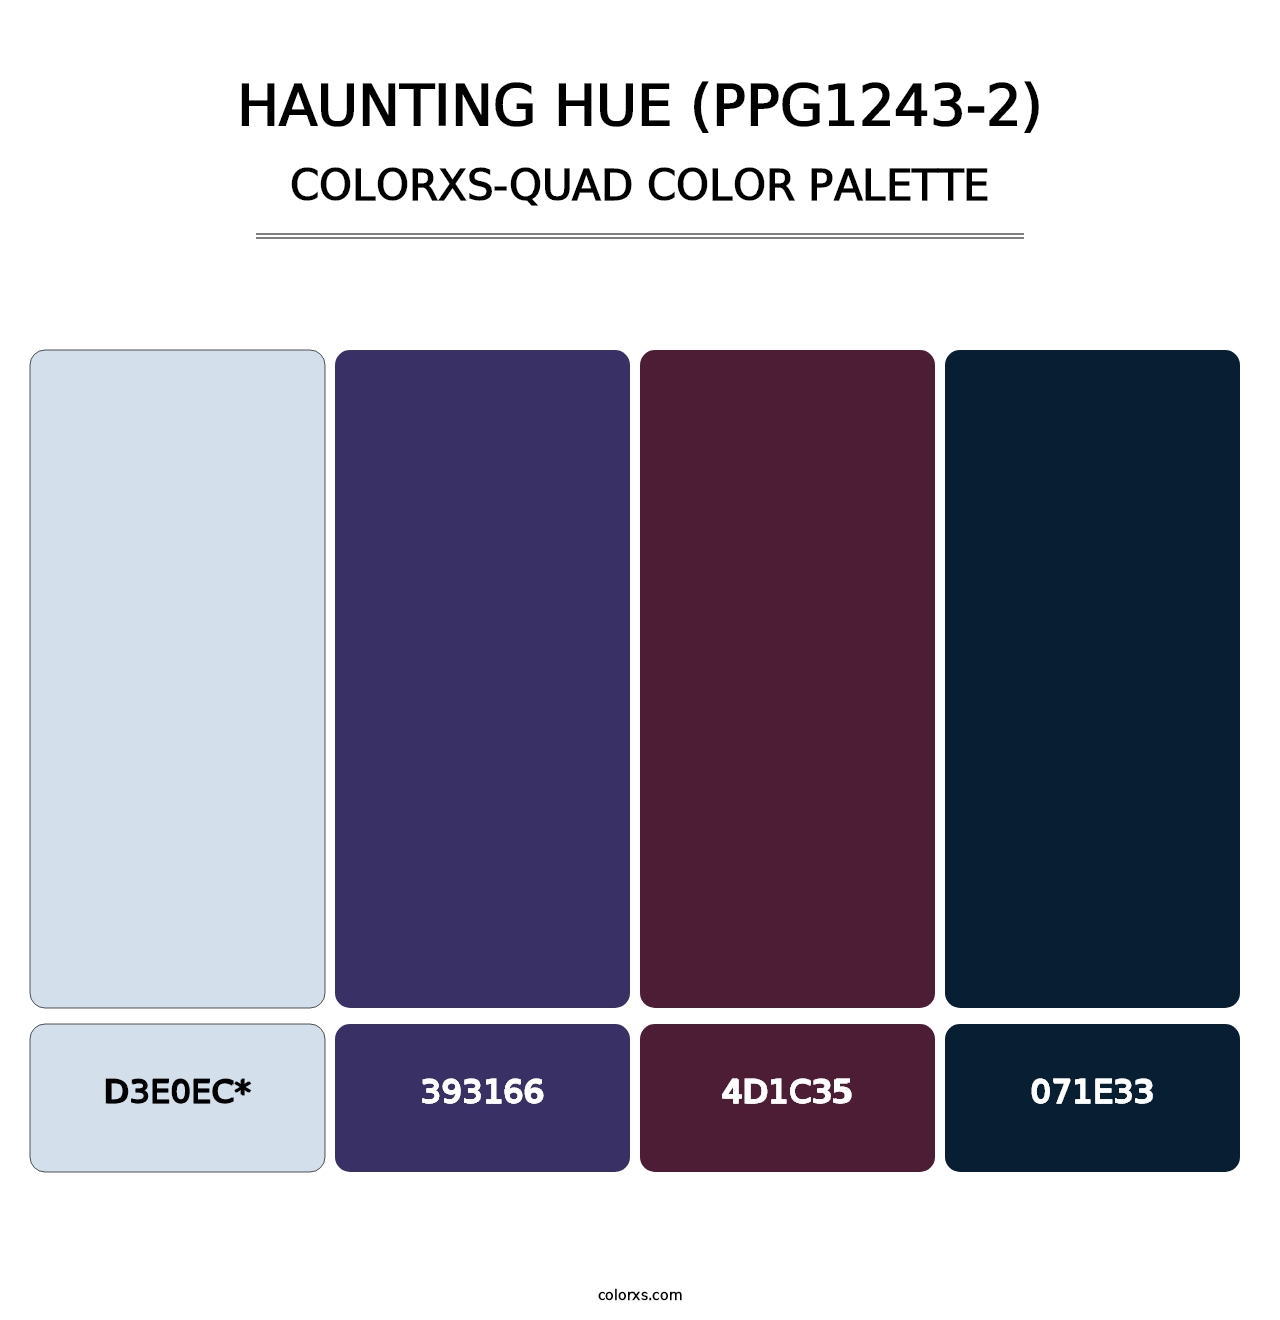 Haunting Hue (PPG1243-2) - Colorxs Quad Palette